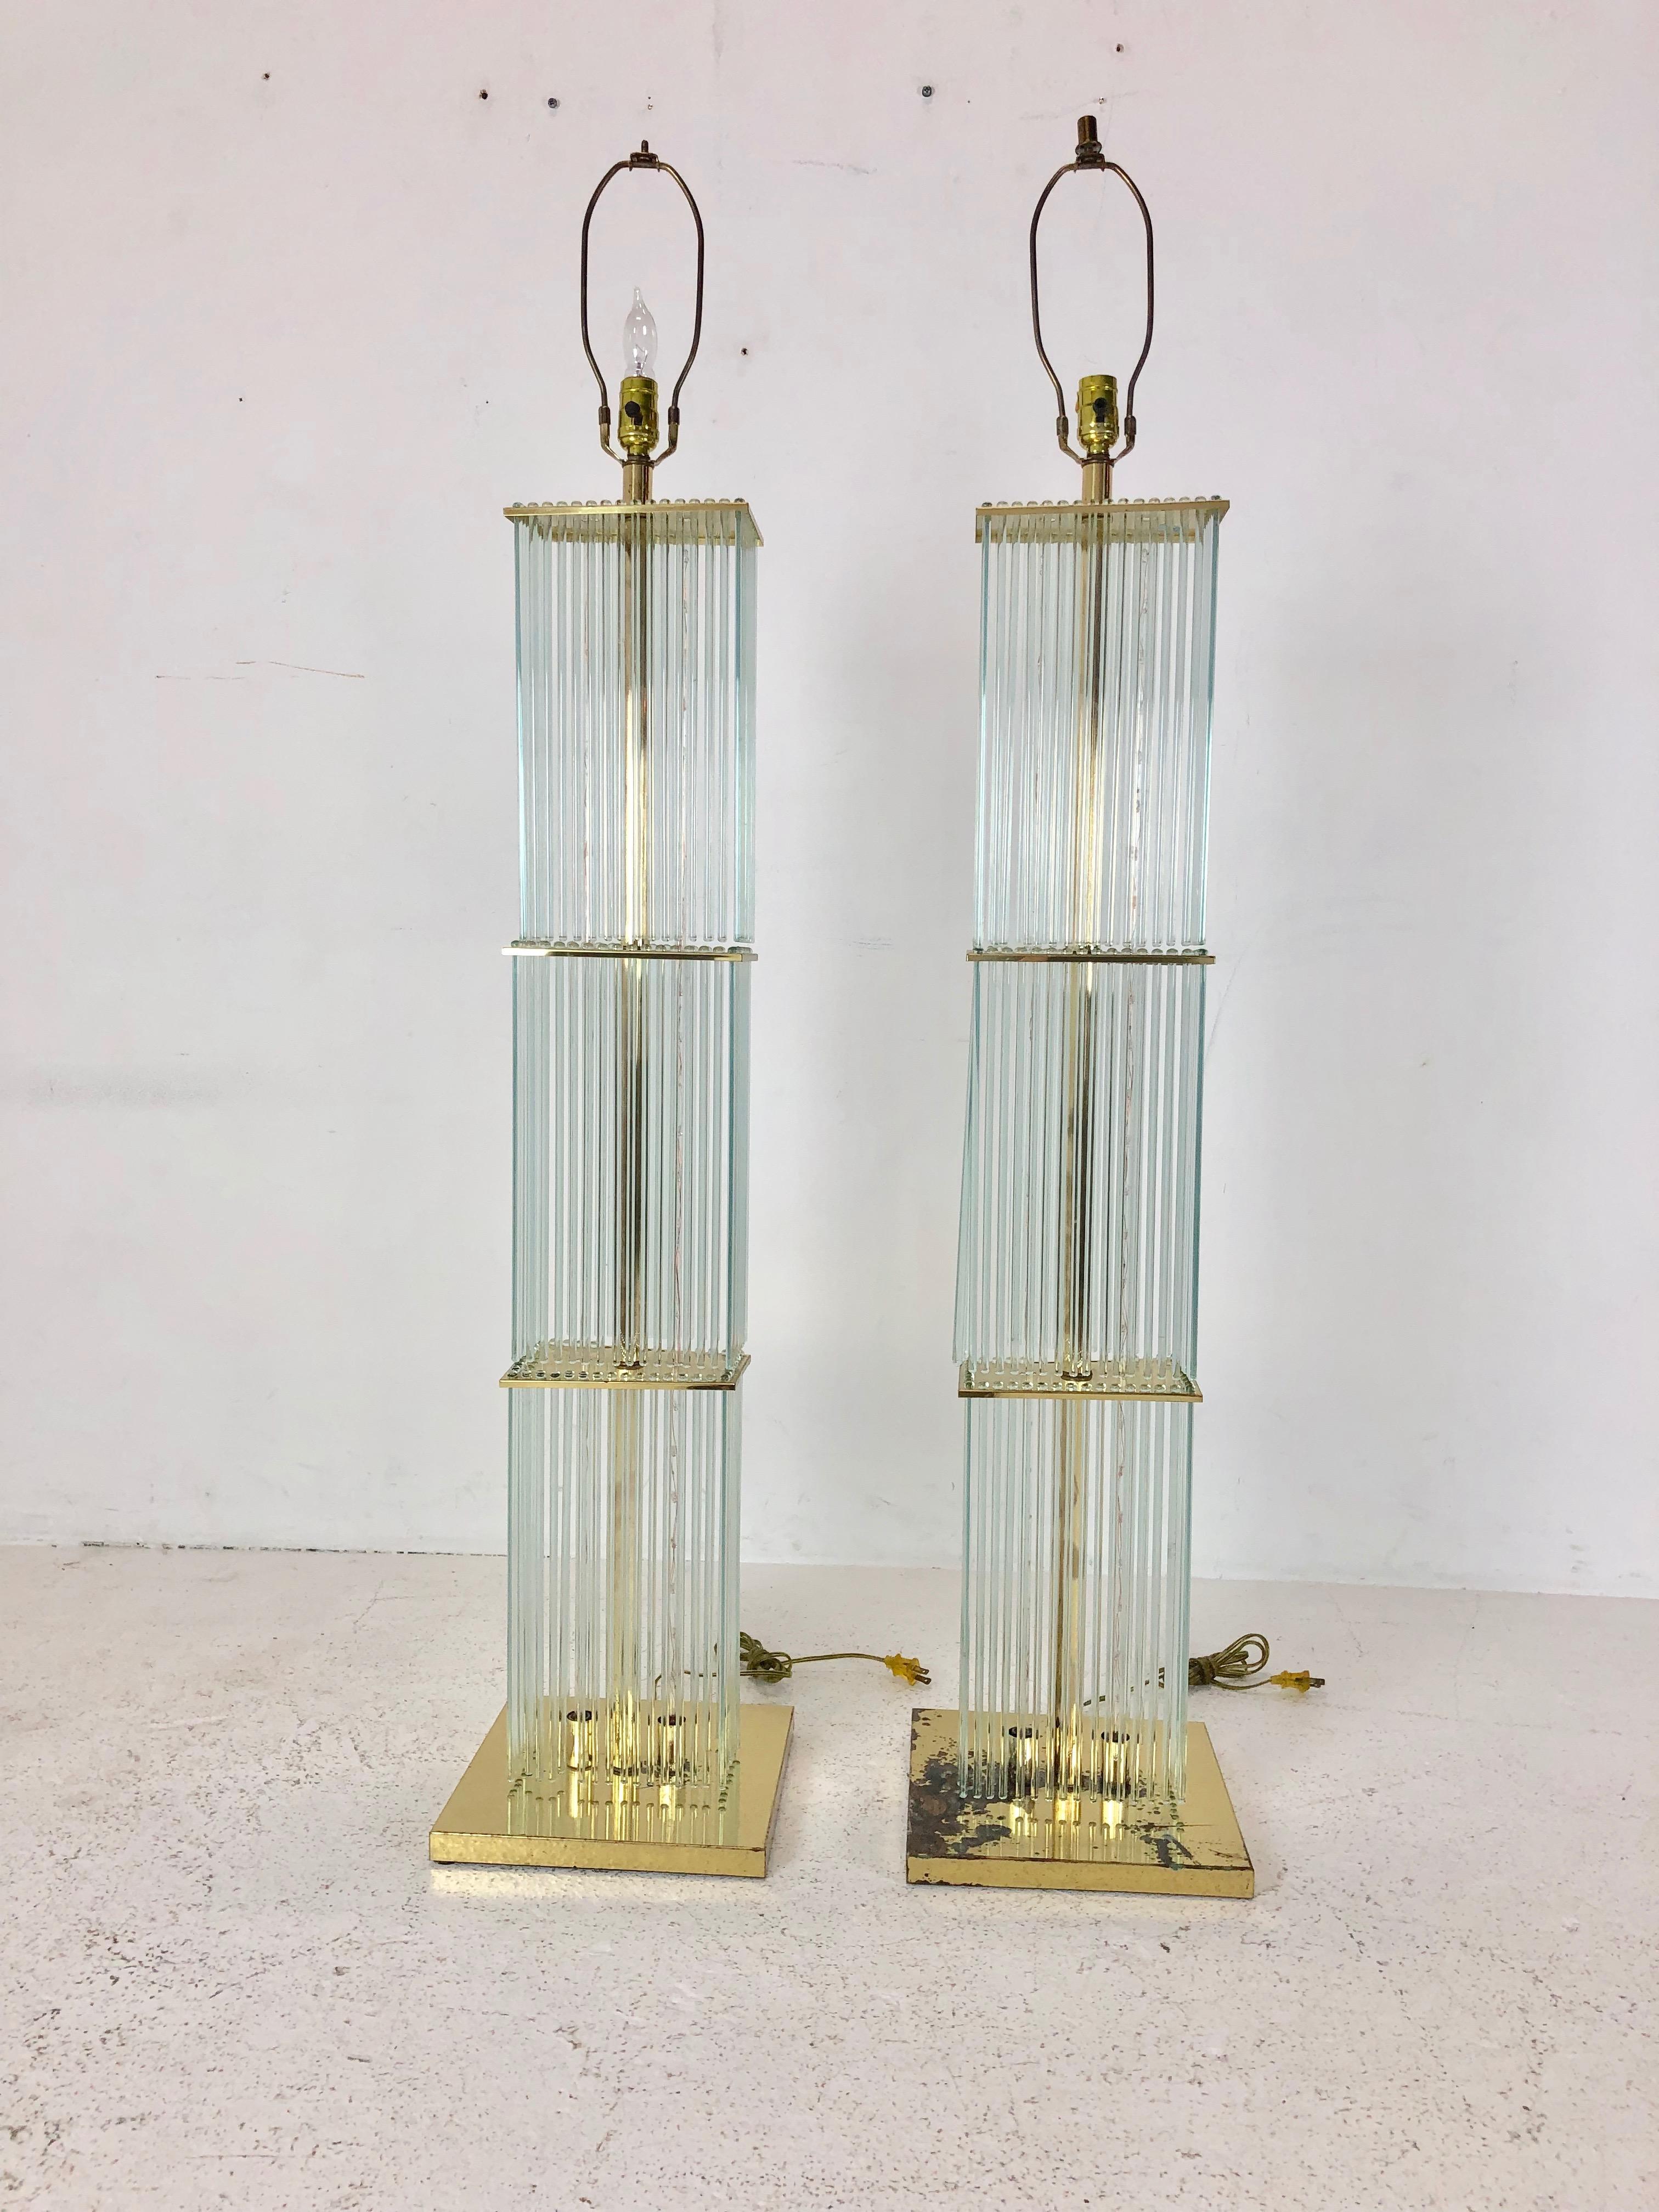 Ein Paar Sciolari Stehlampen aus Messing und Glas aus den 1960er Jahren. Das Messing muss neu beschichtet und die Lampenschirme müssen repariert werden.

Abmessungen:
11.25 B x 11,25 T x 56 T (Oberseite der Harfe) 57 T (Oberseite des